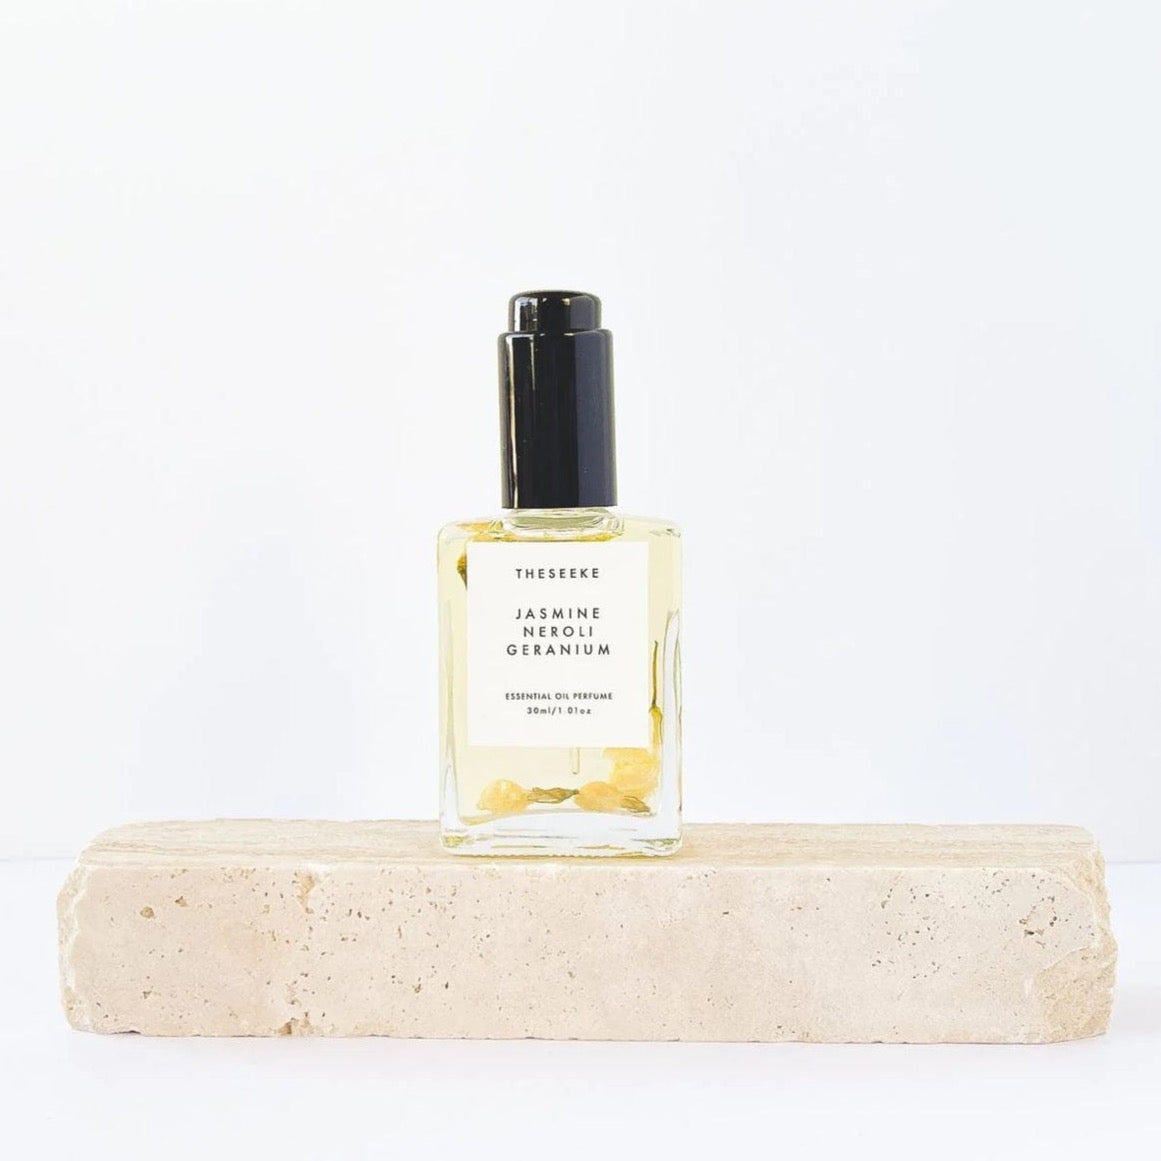 Jasmine Neroli Geranium Oil Perfume by The Seeke